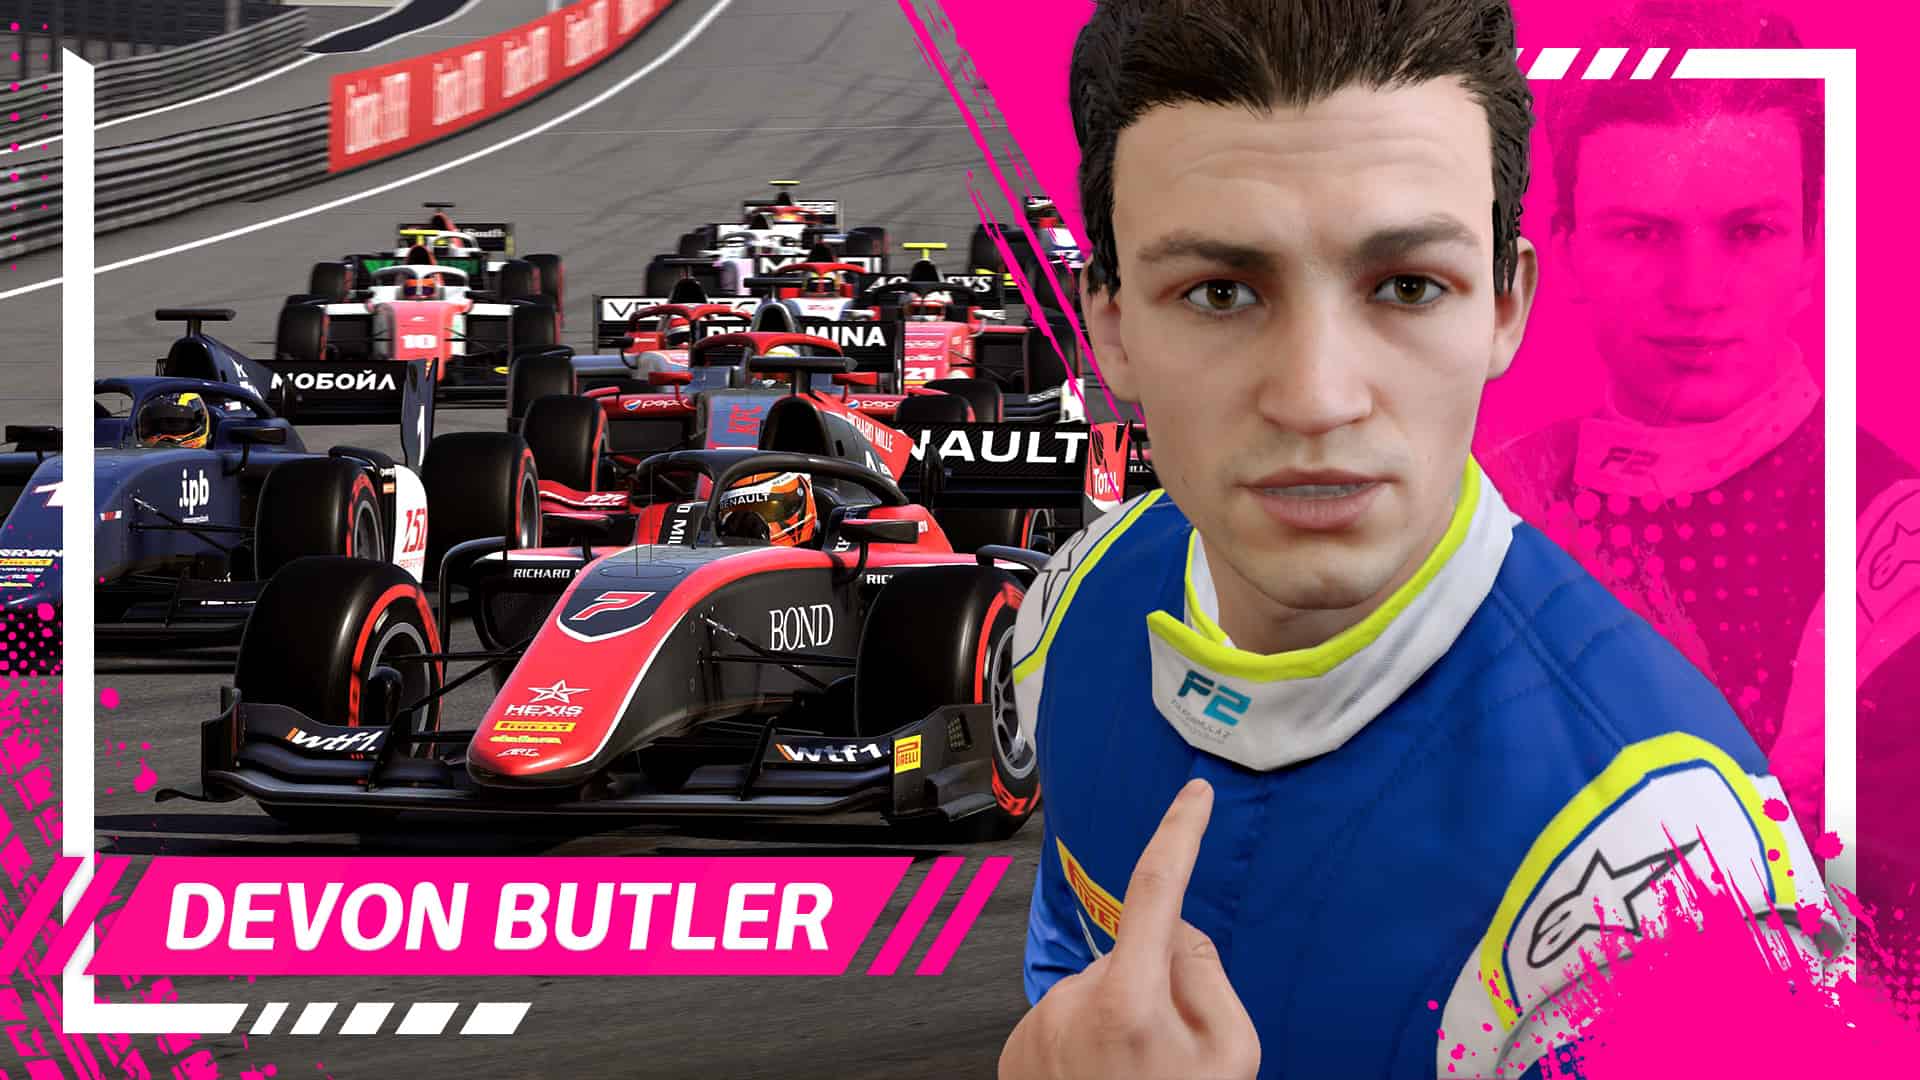 Who is F1 2021’s Devon Butler?